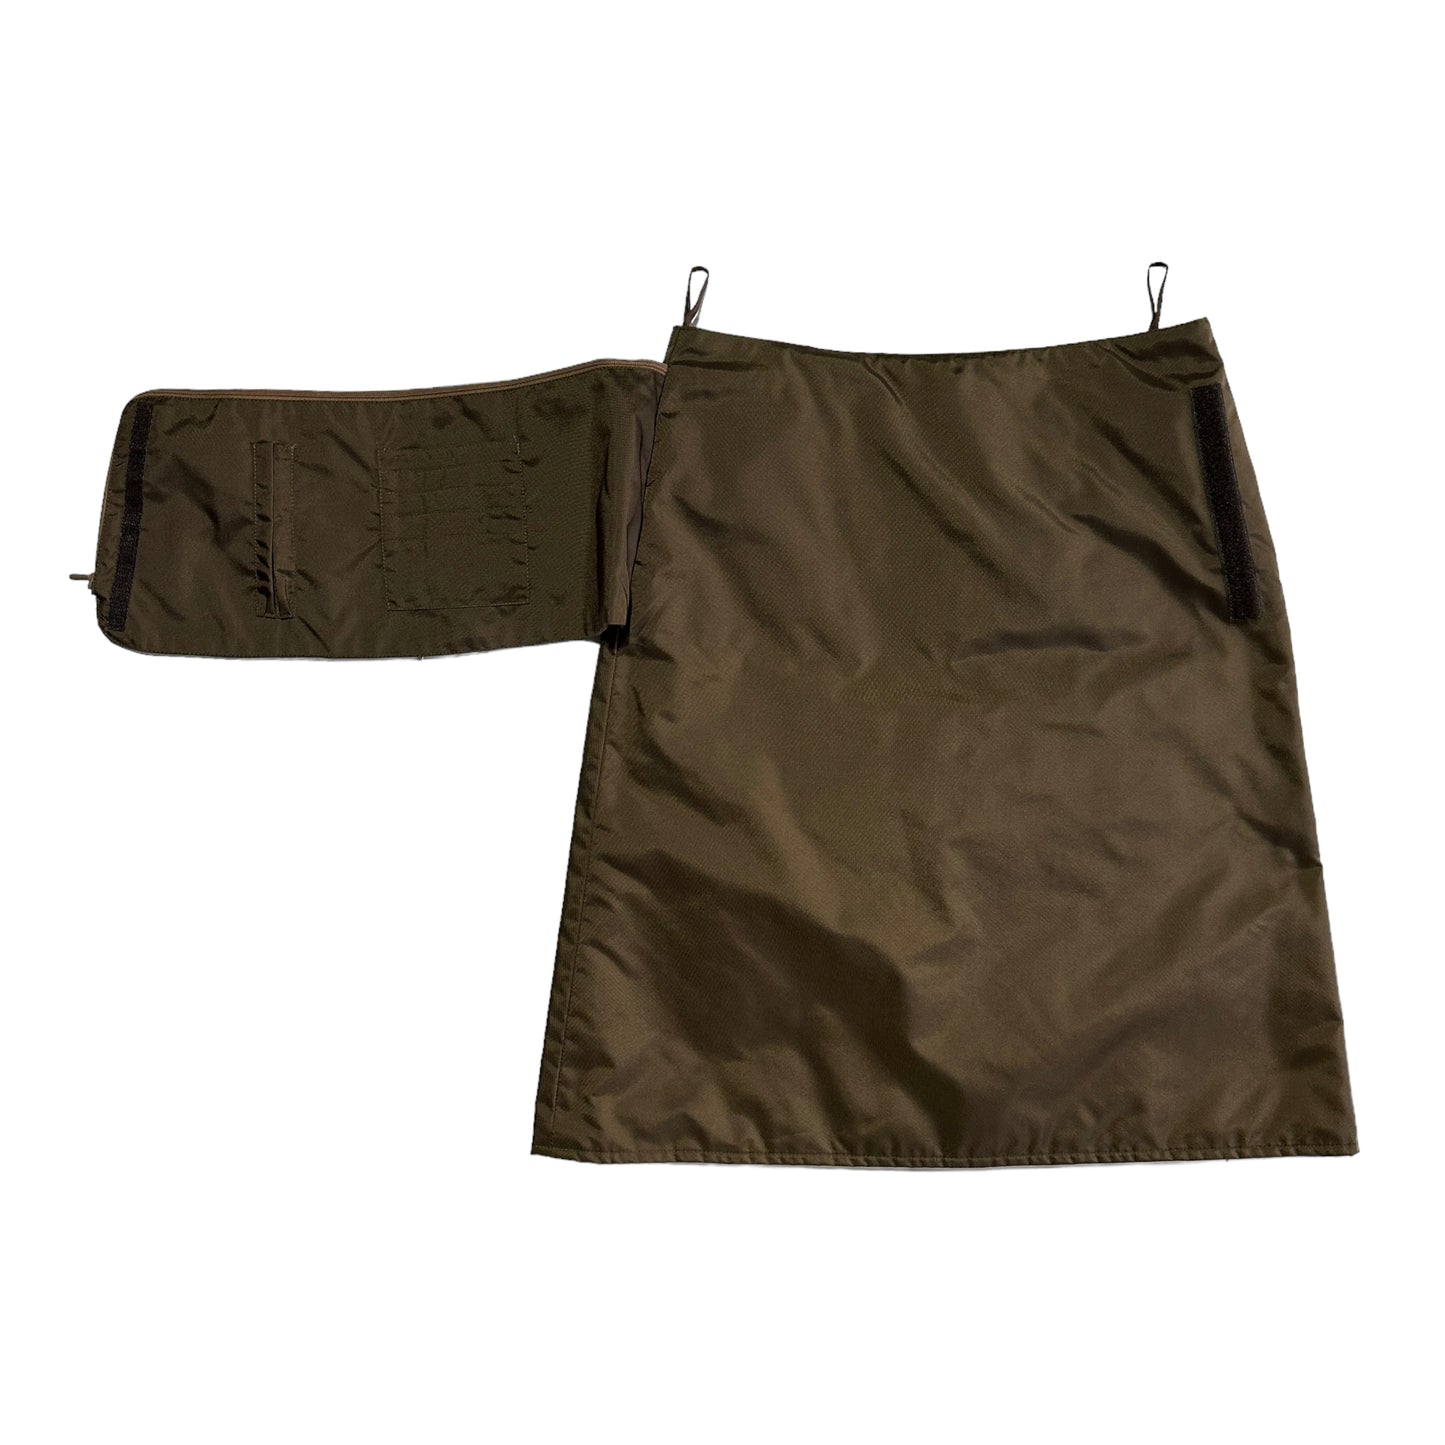 F/W 1999 Miu Miu Hidden Pocket
Skirt set 2/2 (35W)